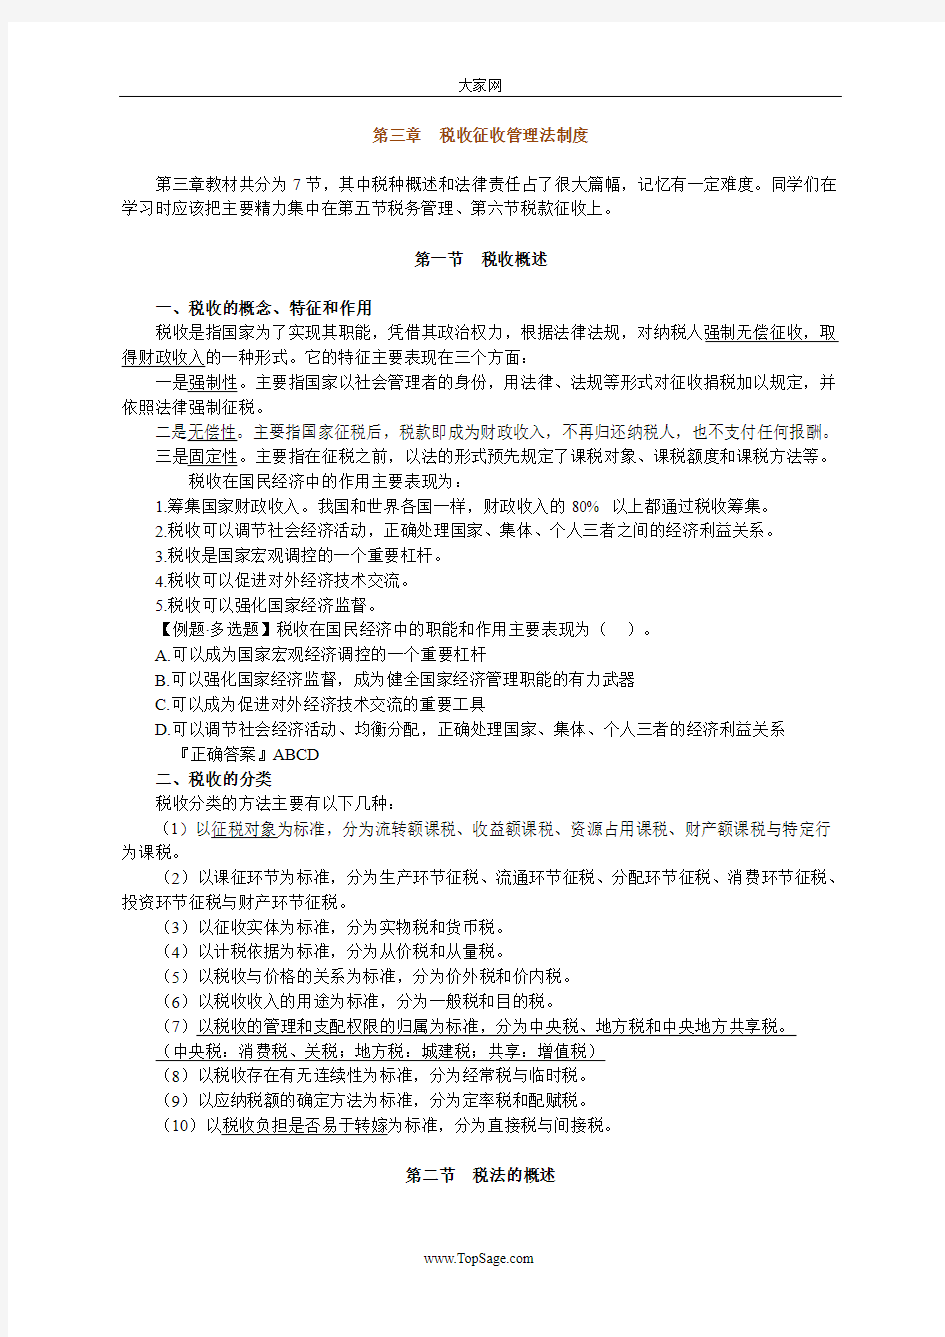 [重庆]2010年会计从业资格考试《财经法规》讲义0301